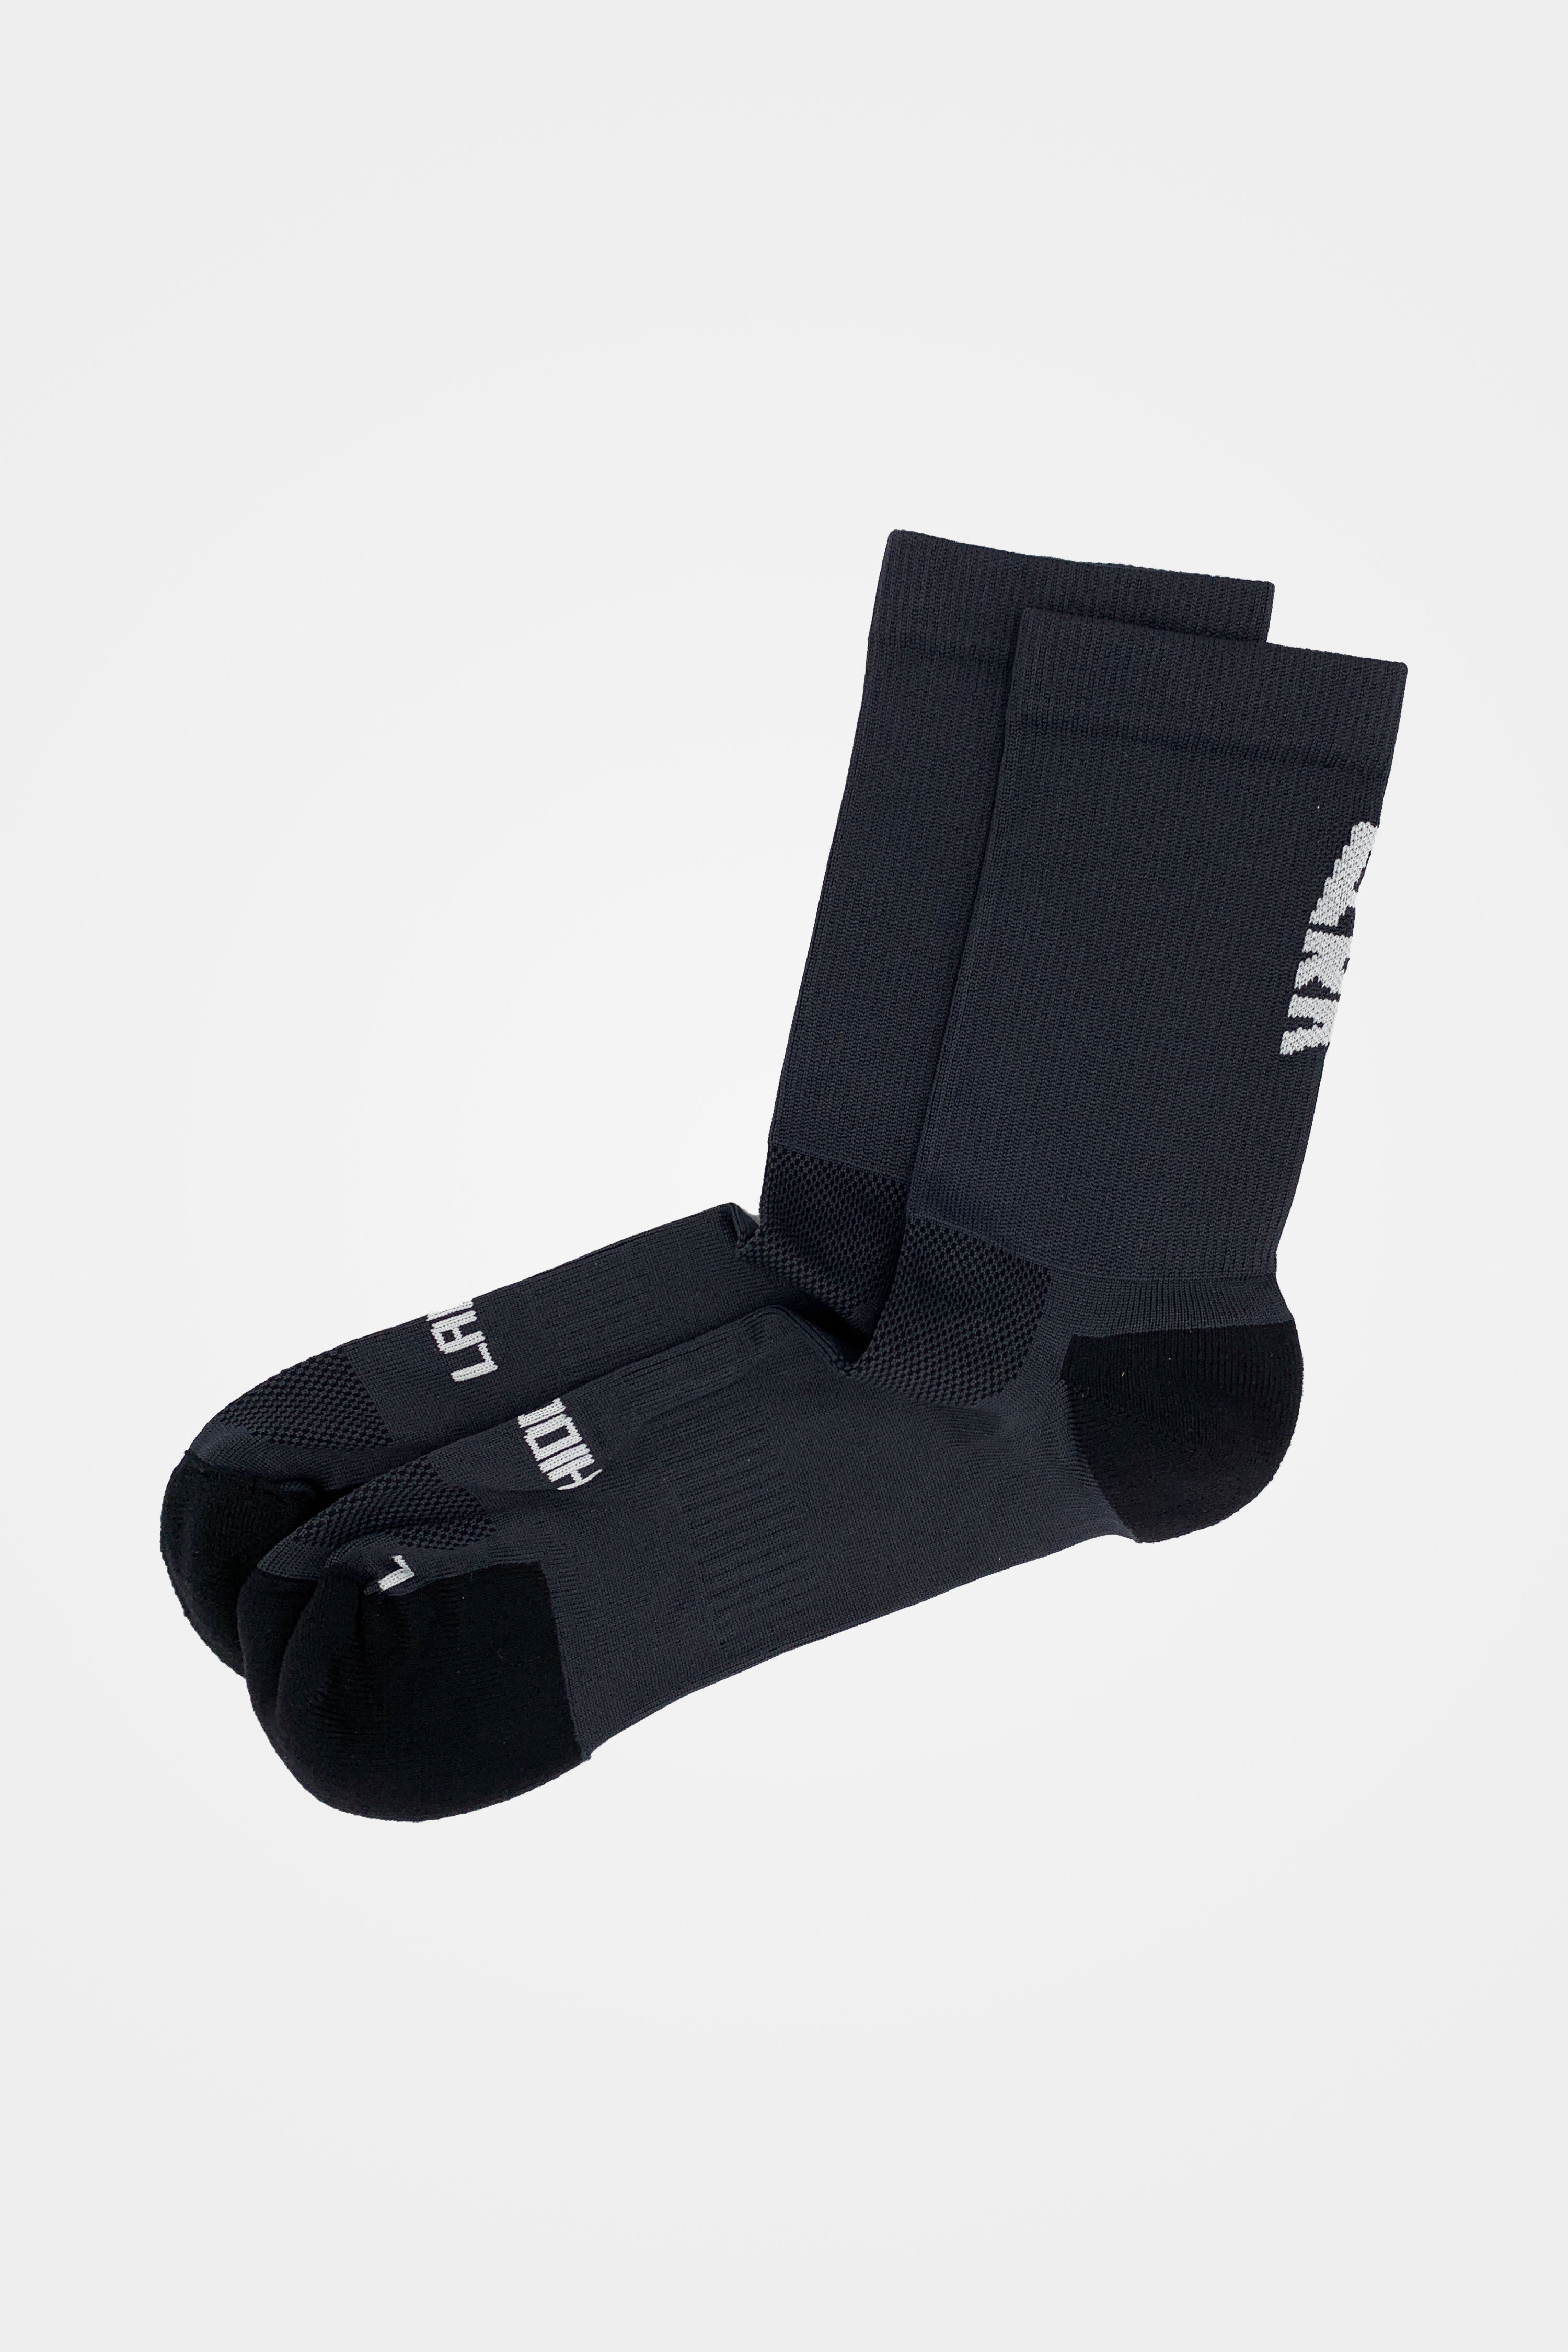 Product photo of Performance Socks MID Black